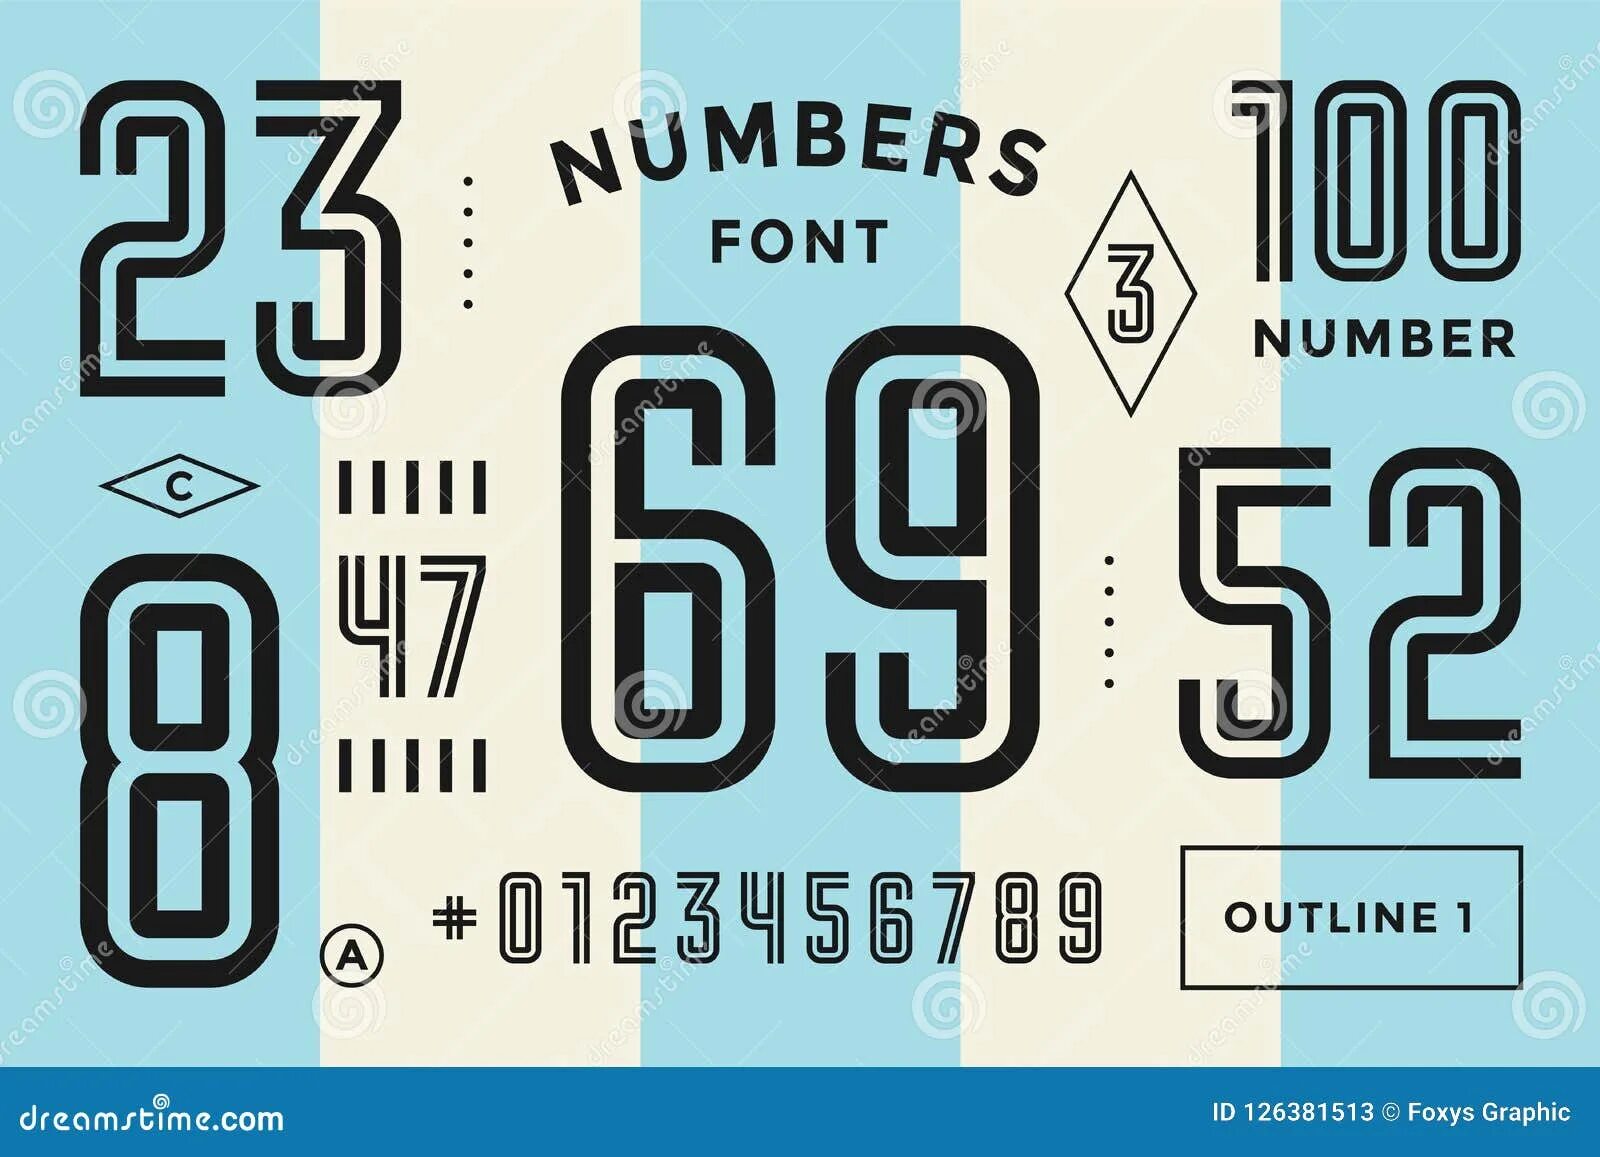 Numbers fonts. Шрифт numbers. Спортивный шрифт. Спортивные цифры шрифт. Геометрический шрифт цифры.